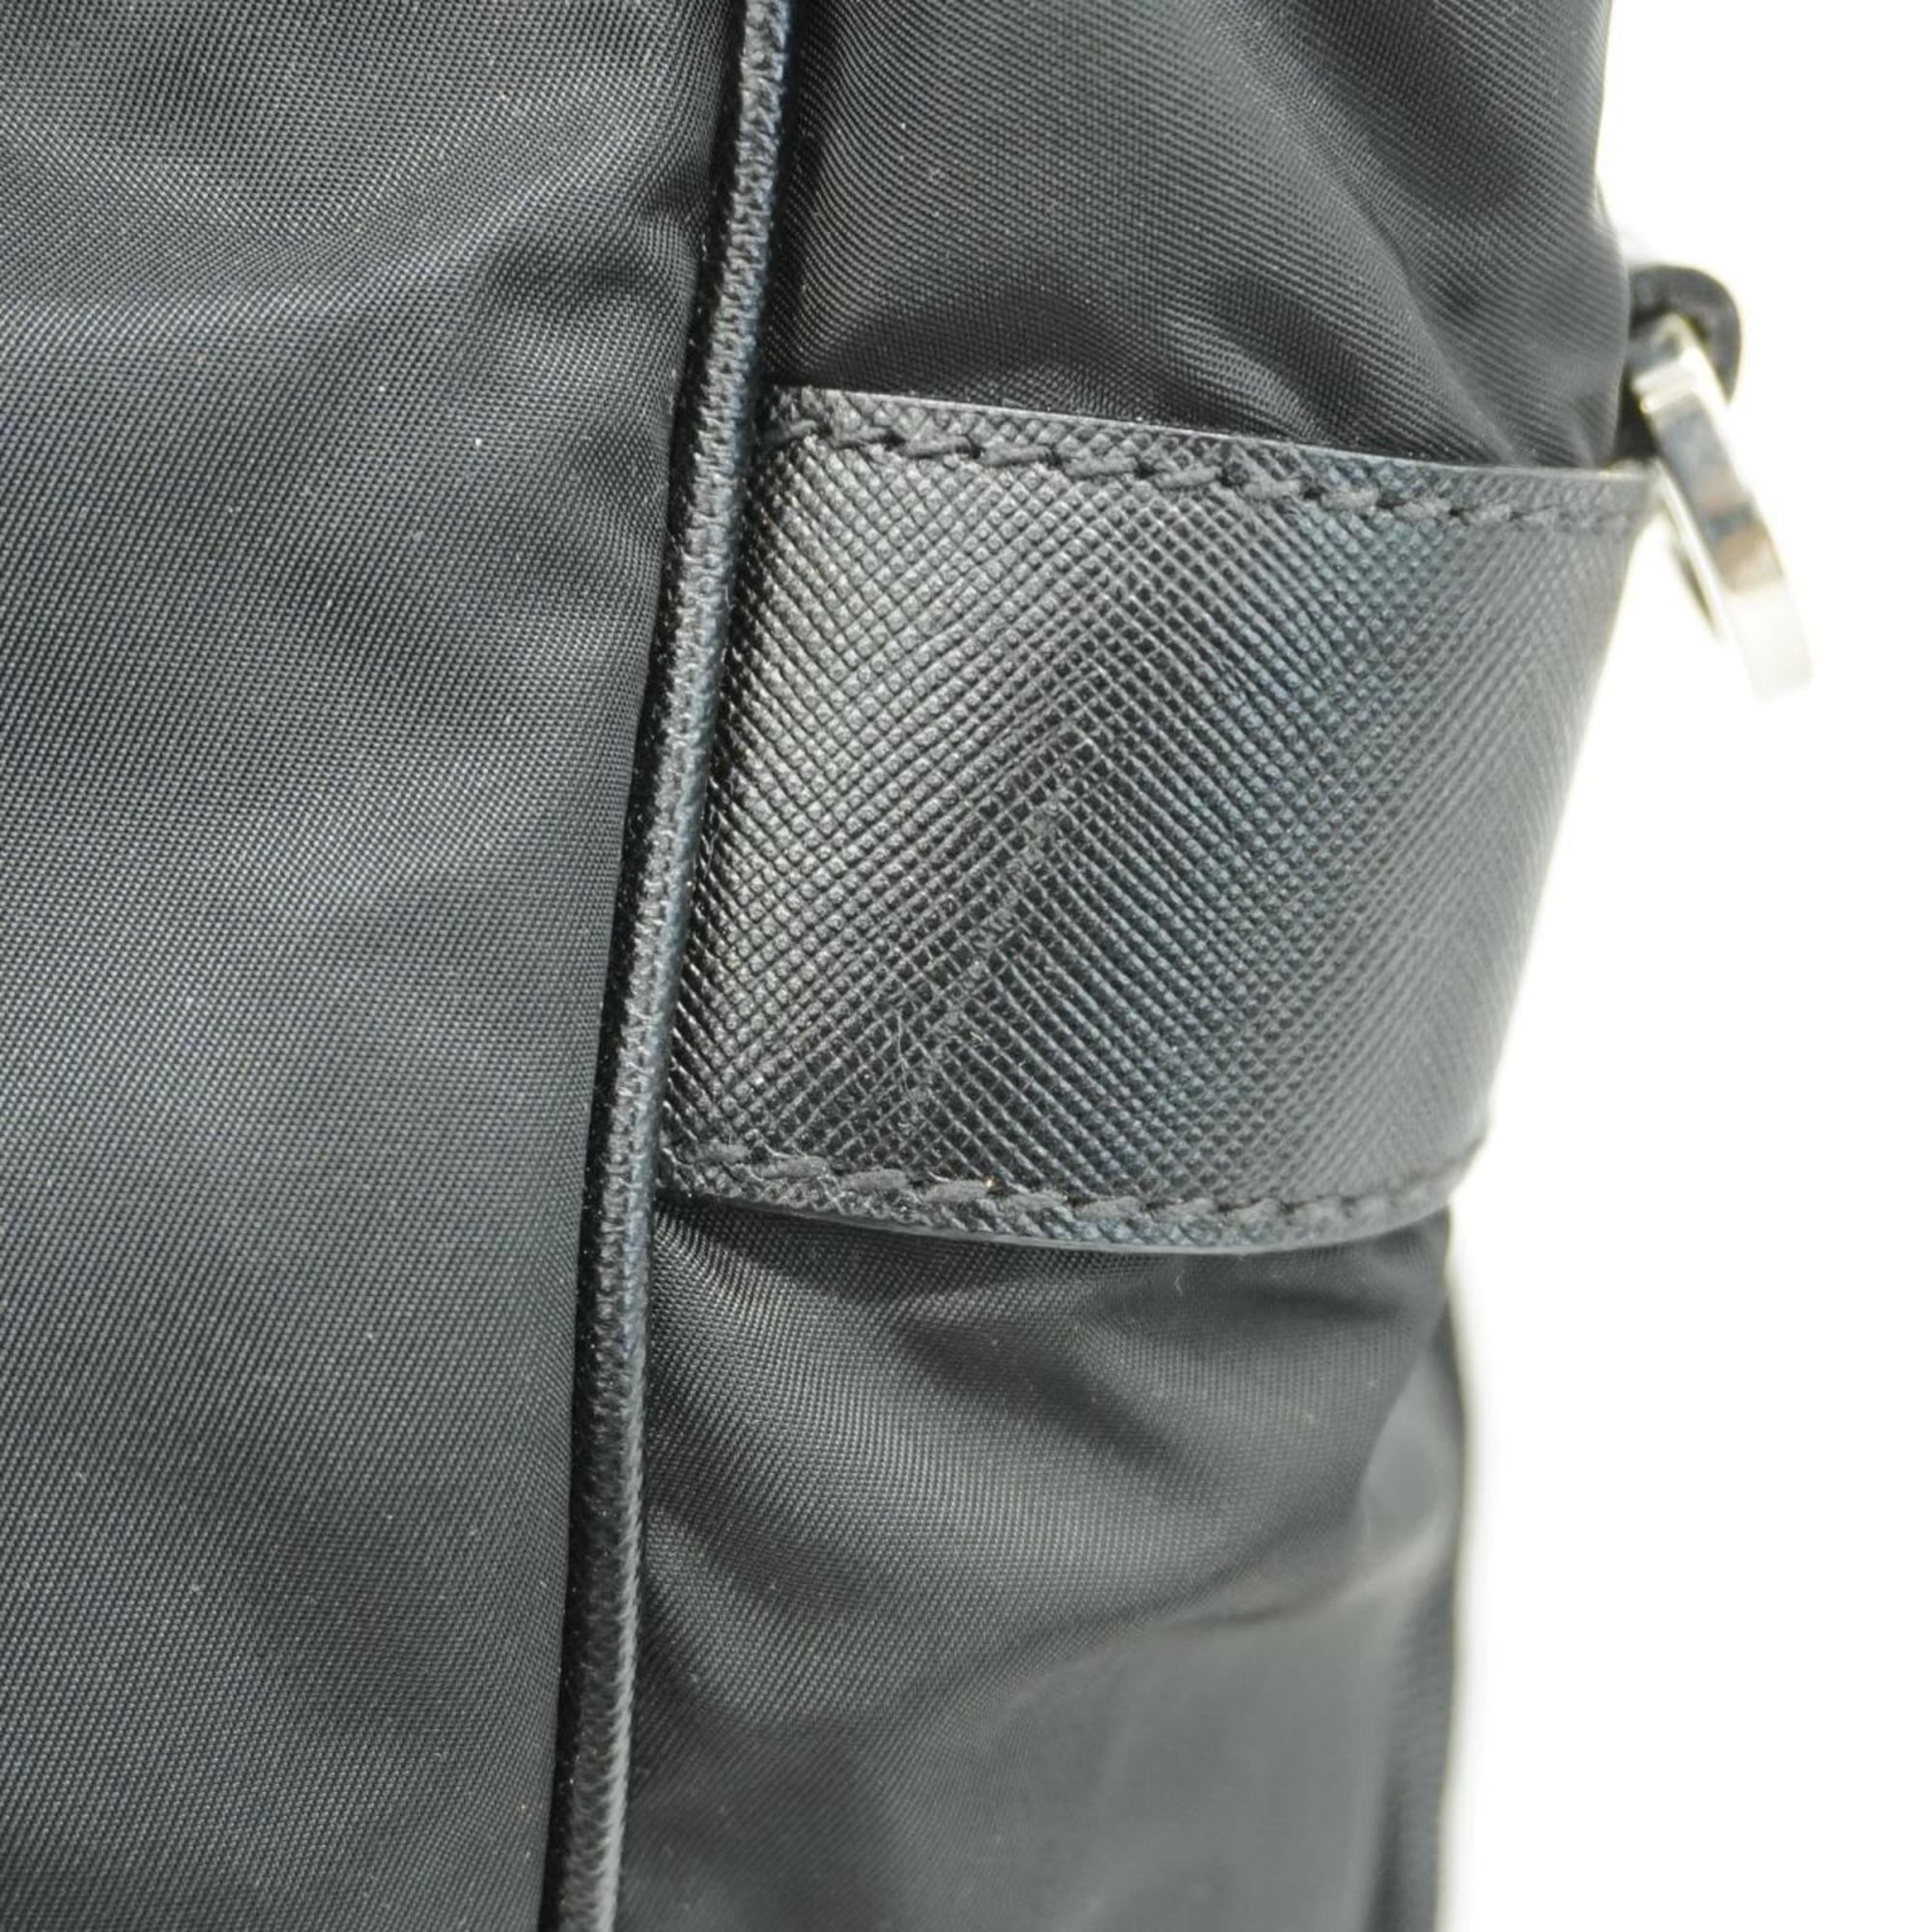 Prada handbag nylon black for men and women